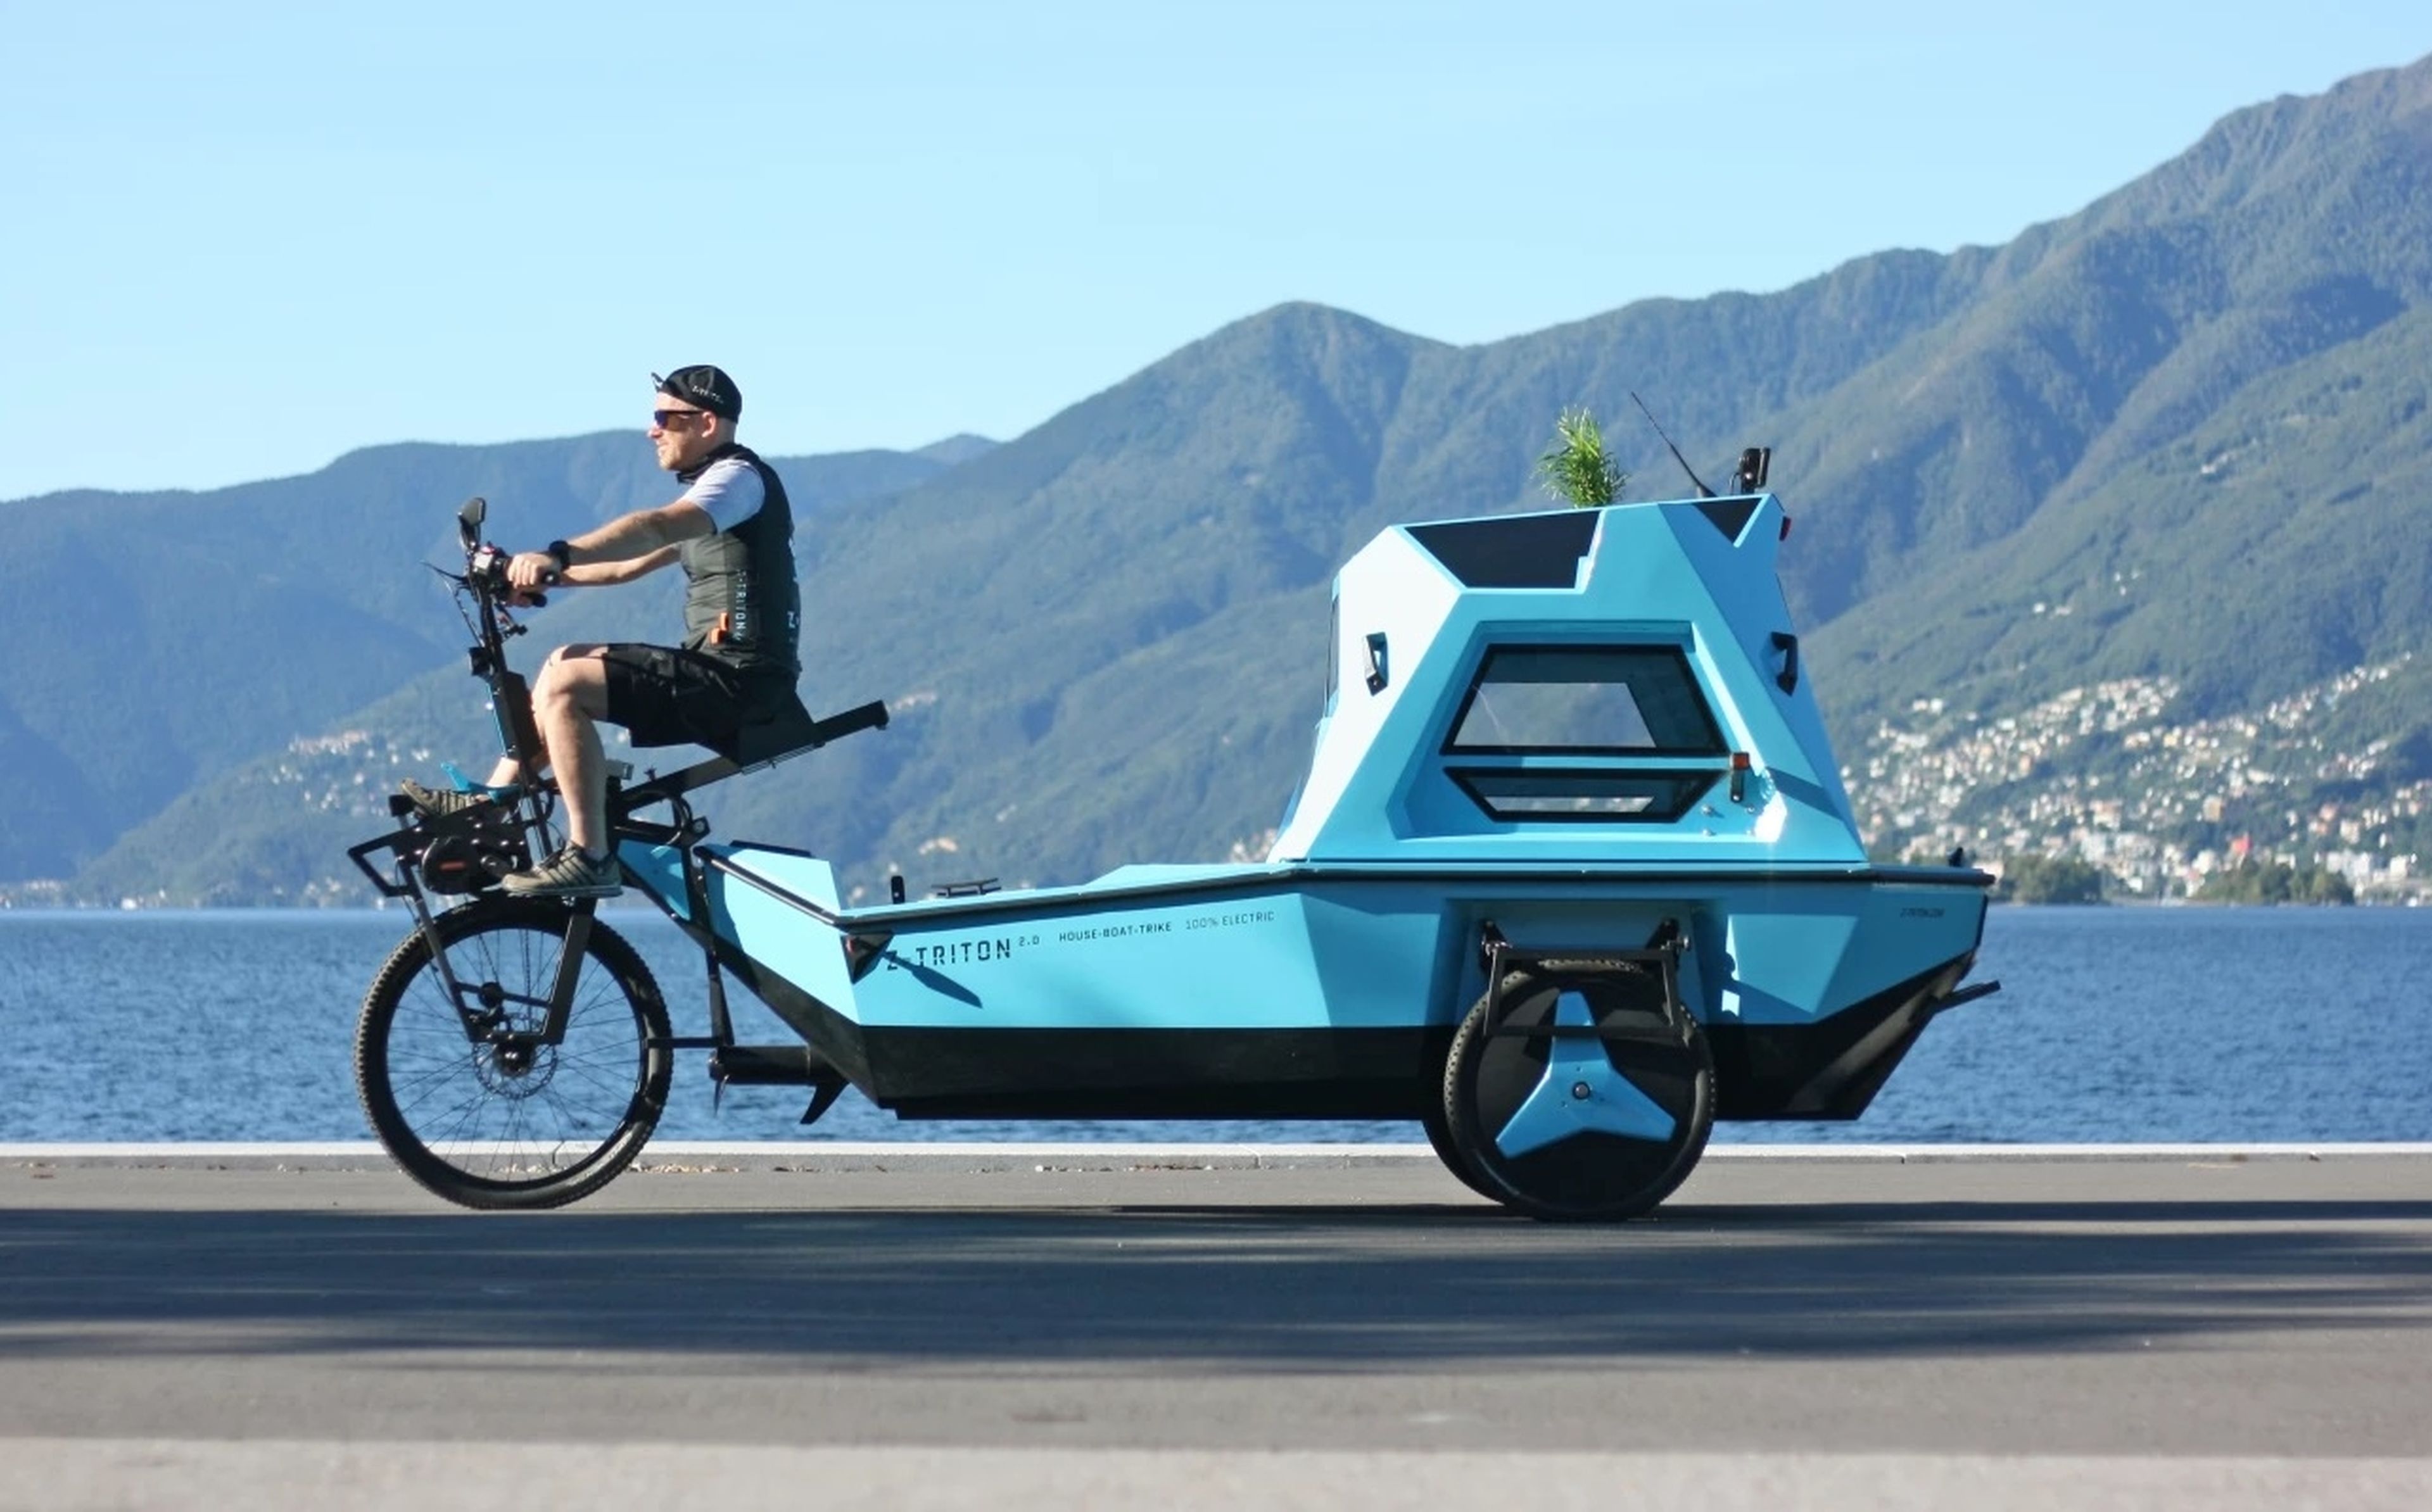 La barcocicleta, ya a la venta: caravana, barco y bicicleta, todo en uno